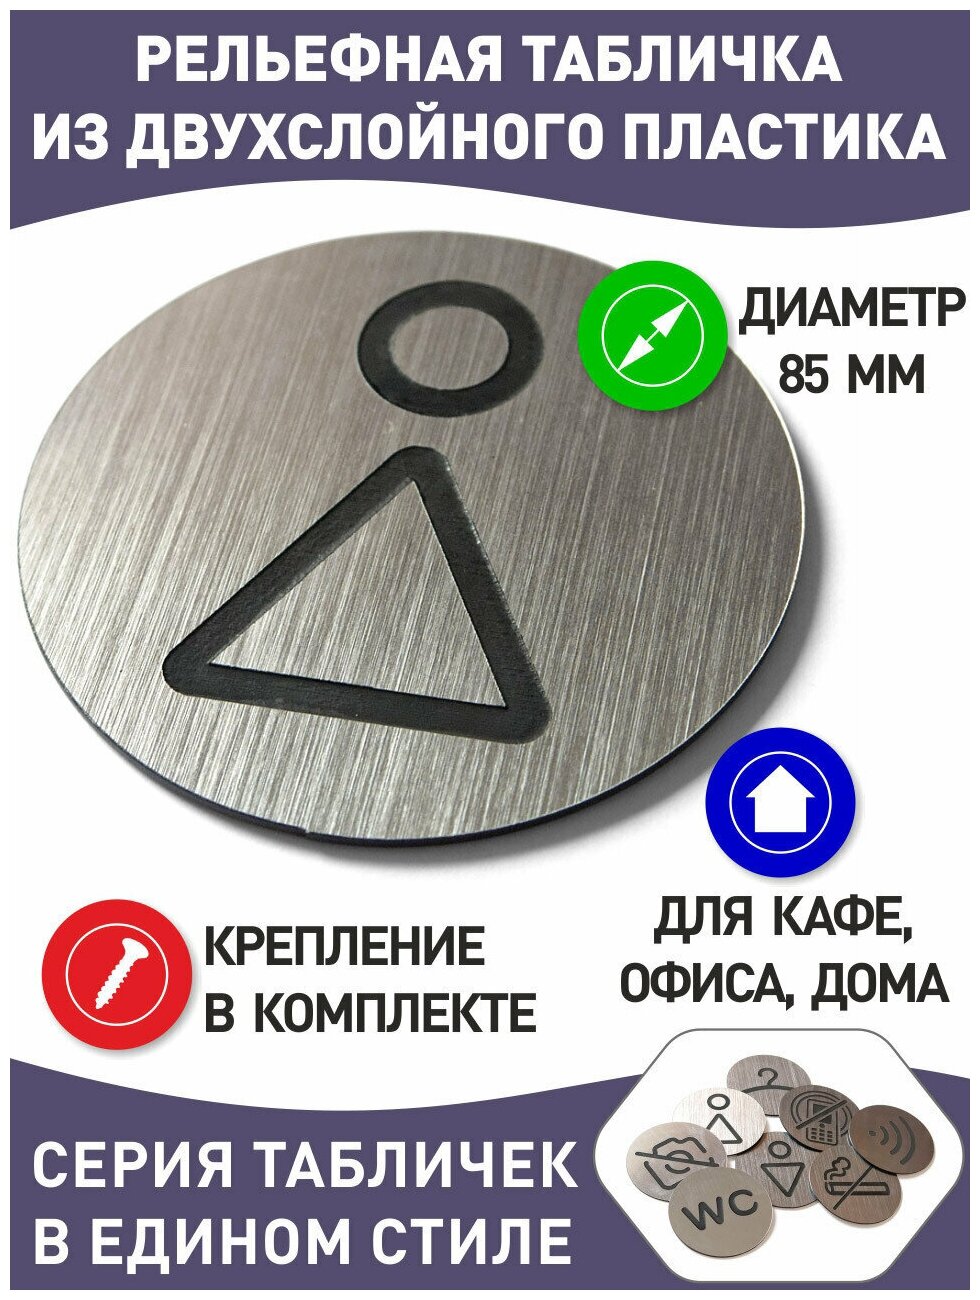 Табличка "Туалет Ж" с лазерной гравировкой изображения